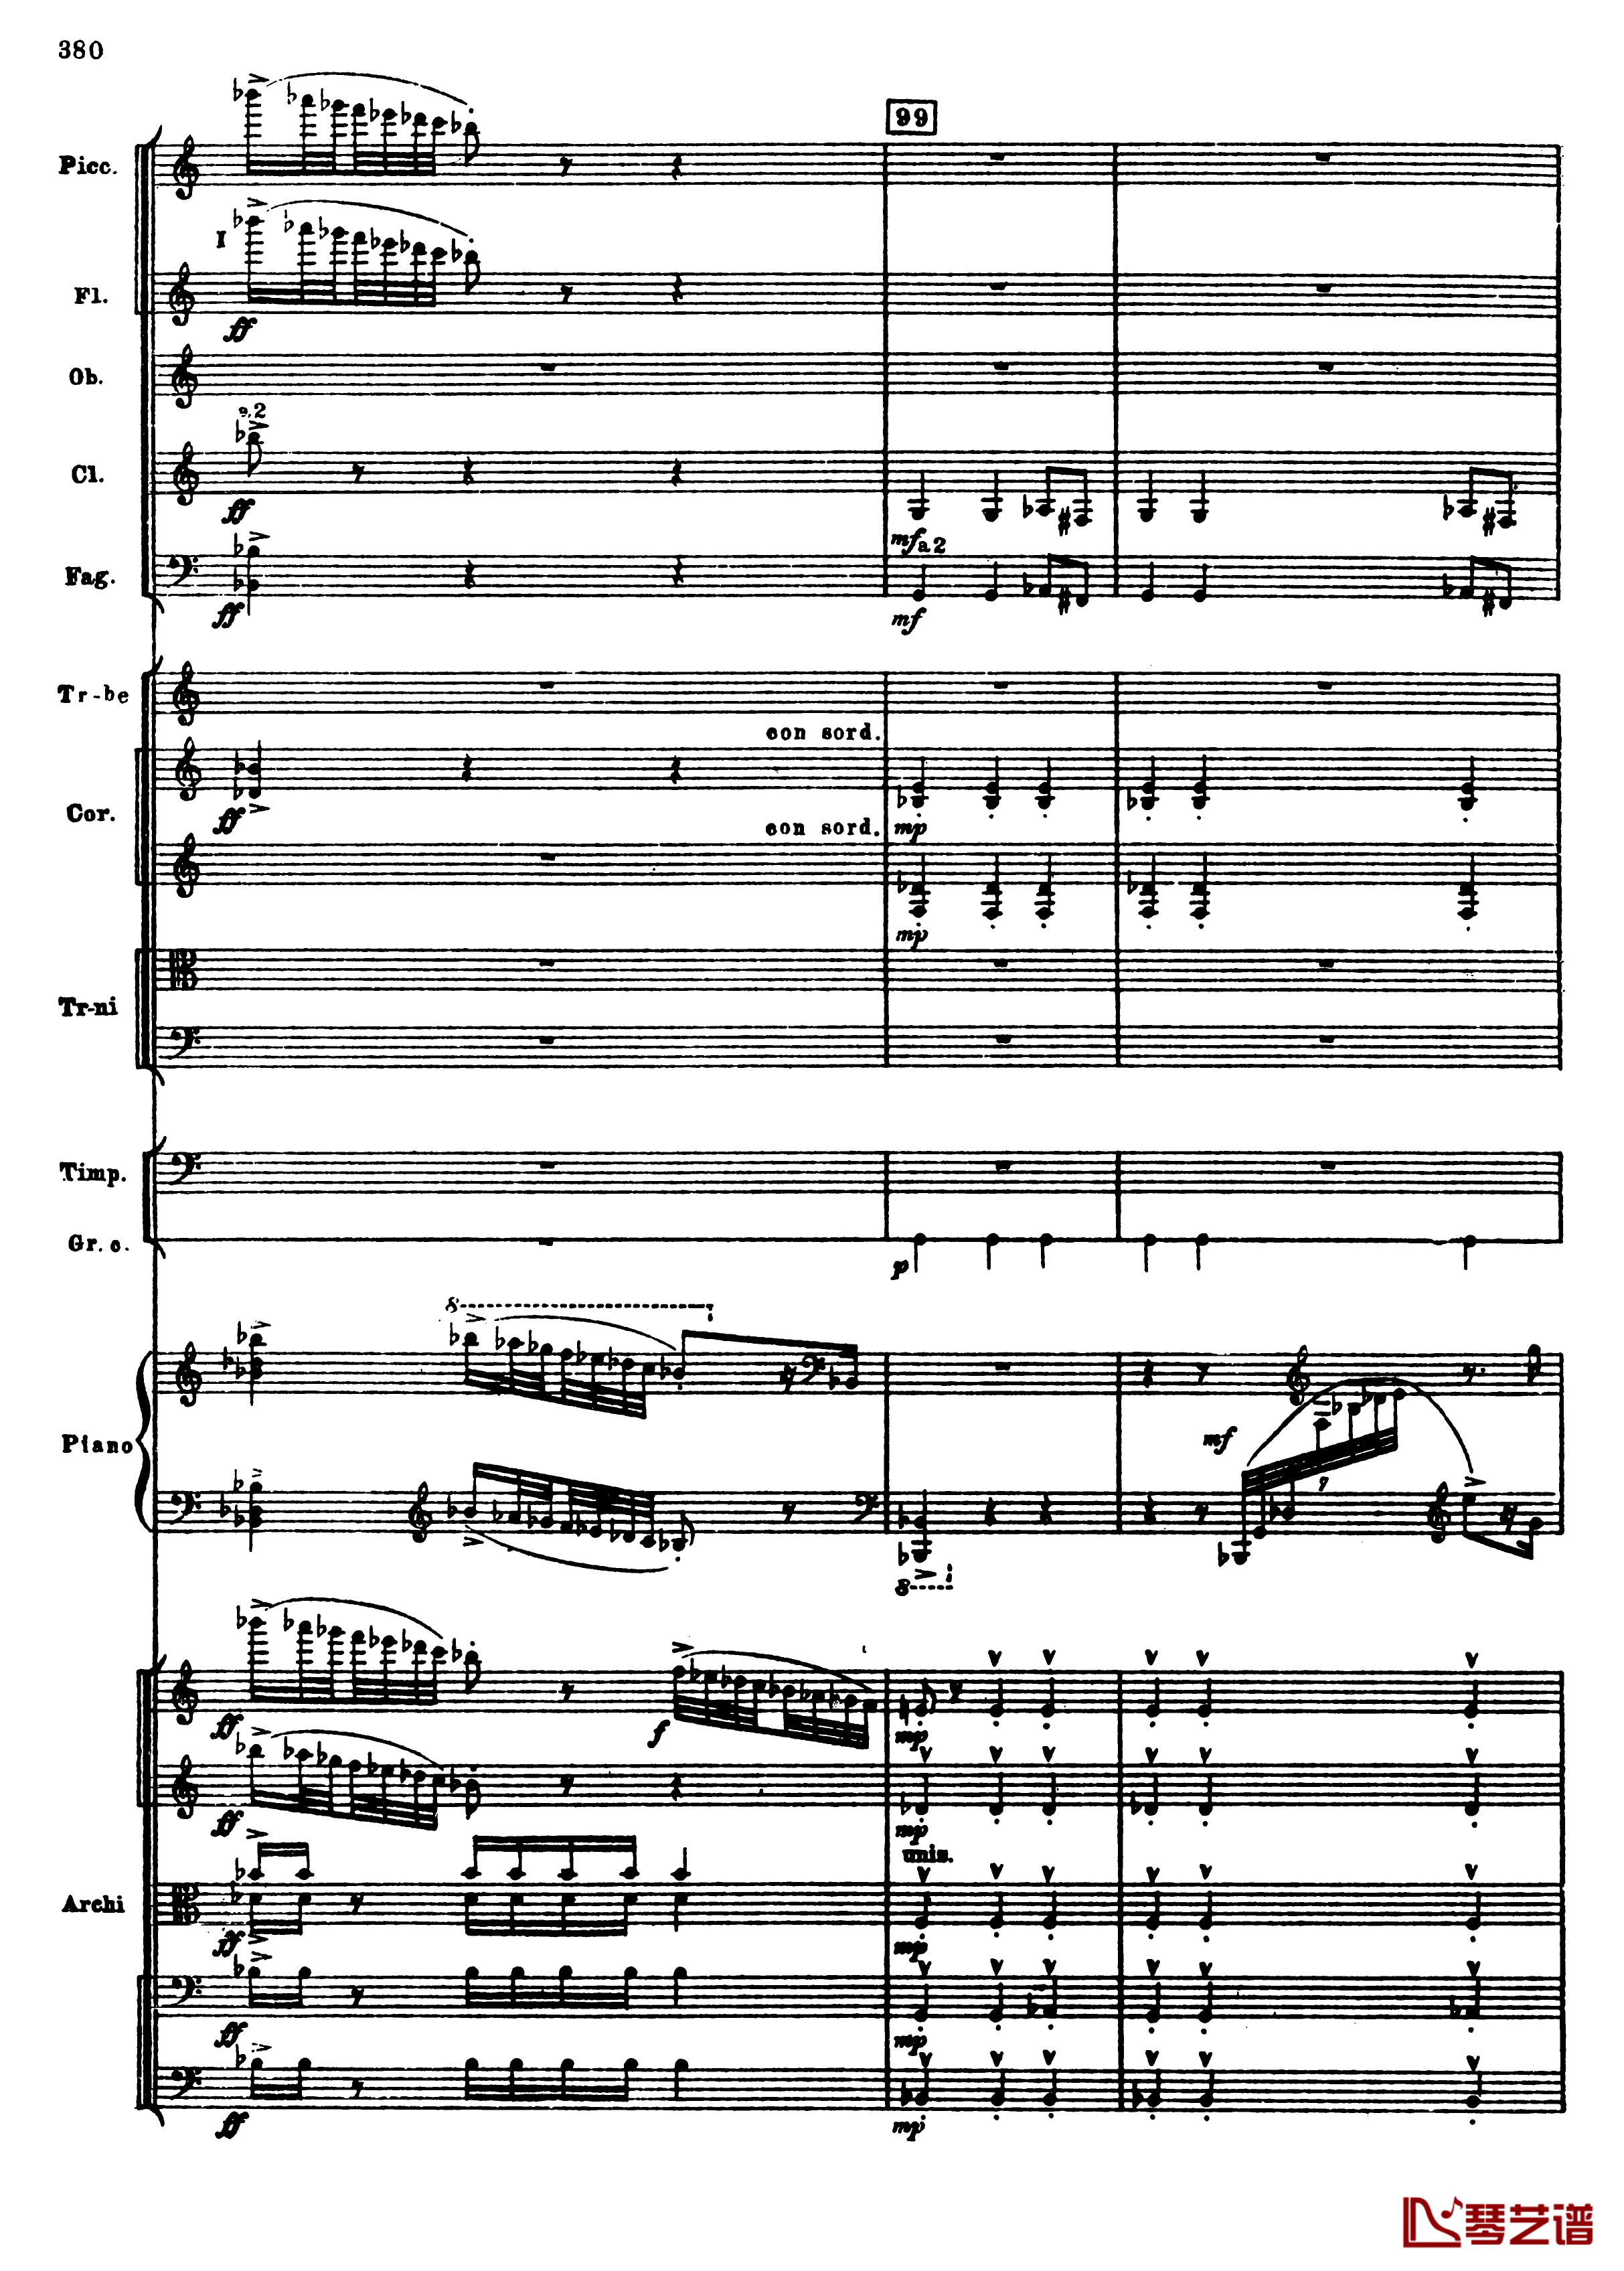 普罗科菲耶夫第三钢琴协奏曲钢琴谱-总谱-普罗科非耶夫112